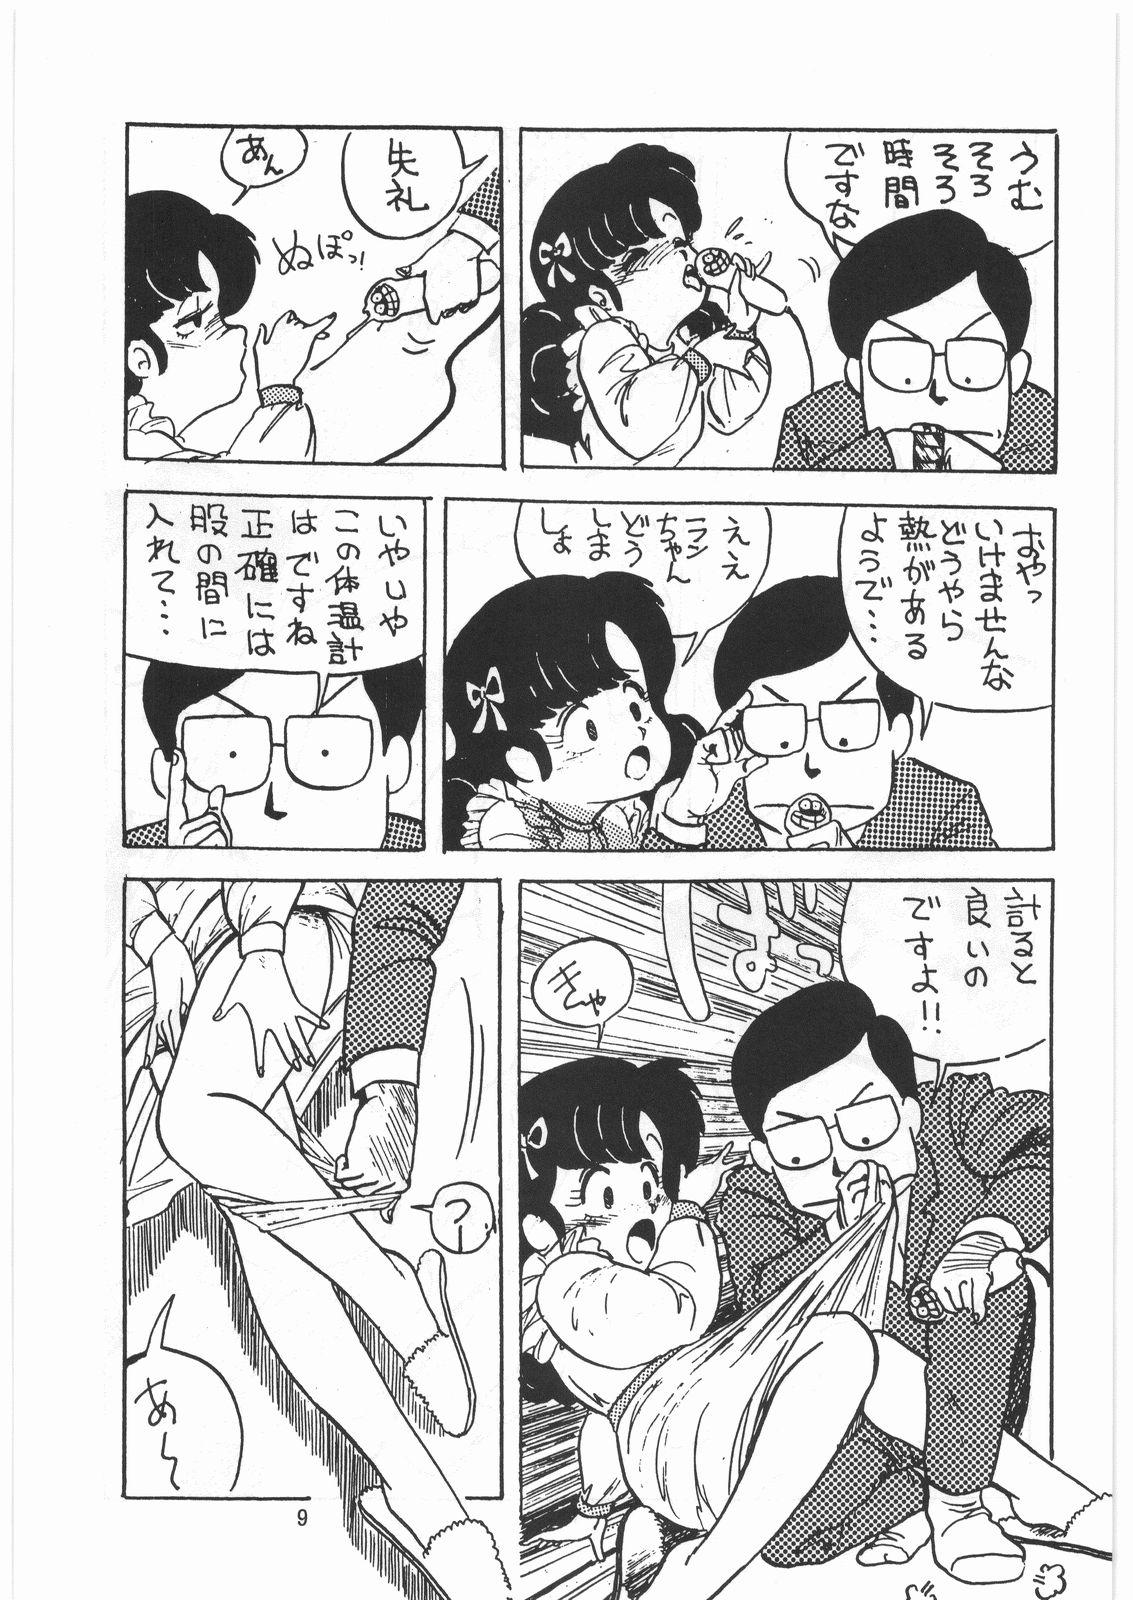 Slut Tororoimo Densetsu - Ten no Maki - Urusei yatsura Maison ikkoku Magical emi Creamy mami Fist of the north star Sasuga no sarutobi Dominate - Page 8